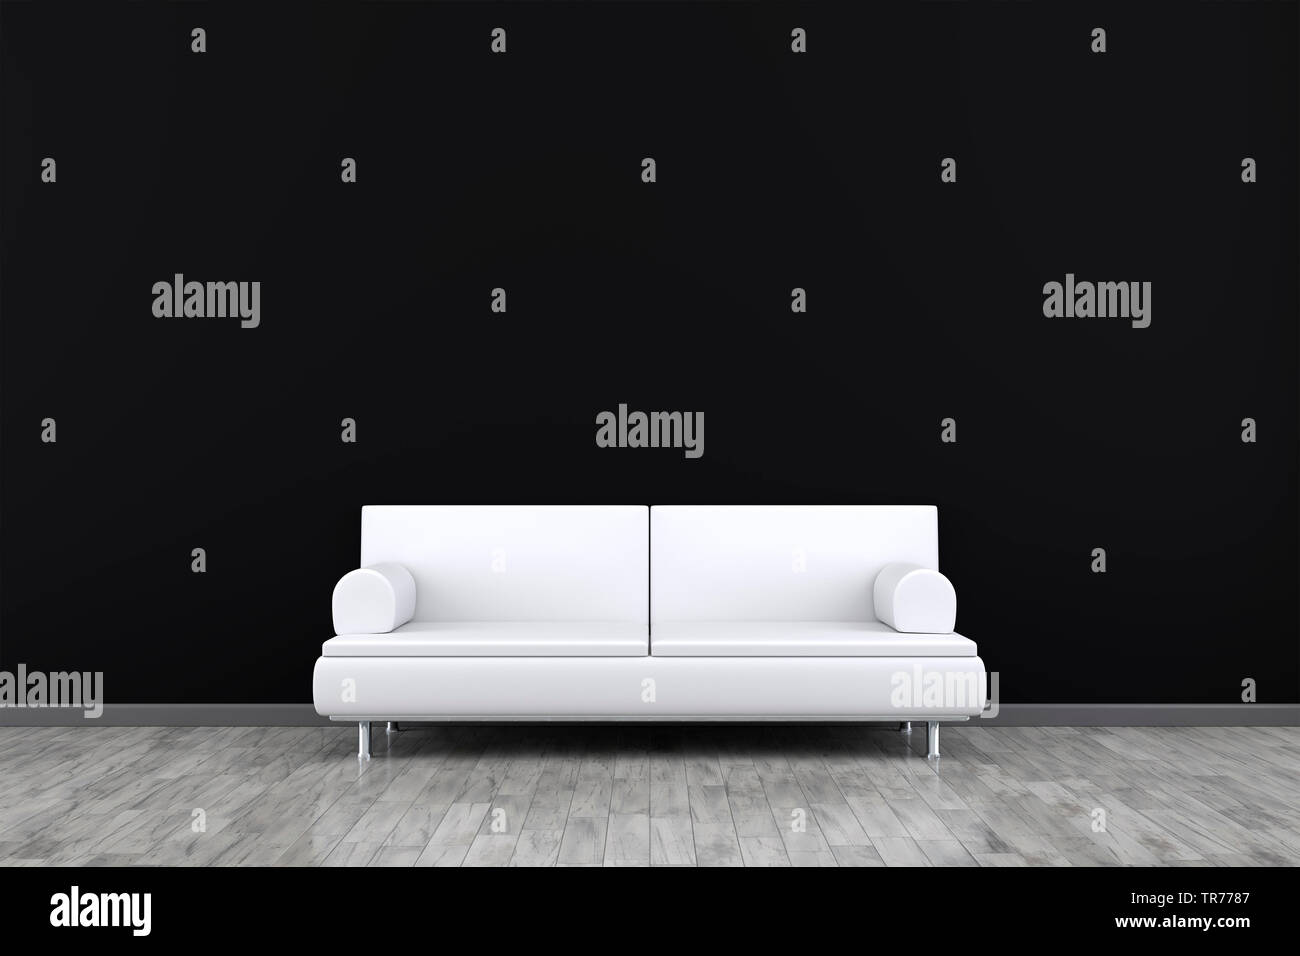 La computer grafica 3D, design di interni con divano in pelle di colore bianco contro un muro nero Foto Stock